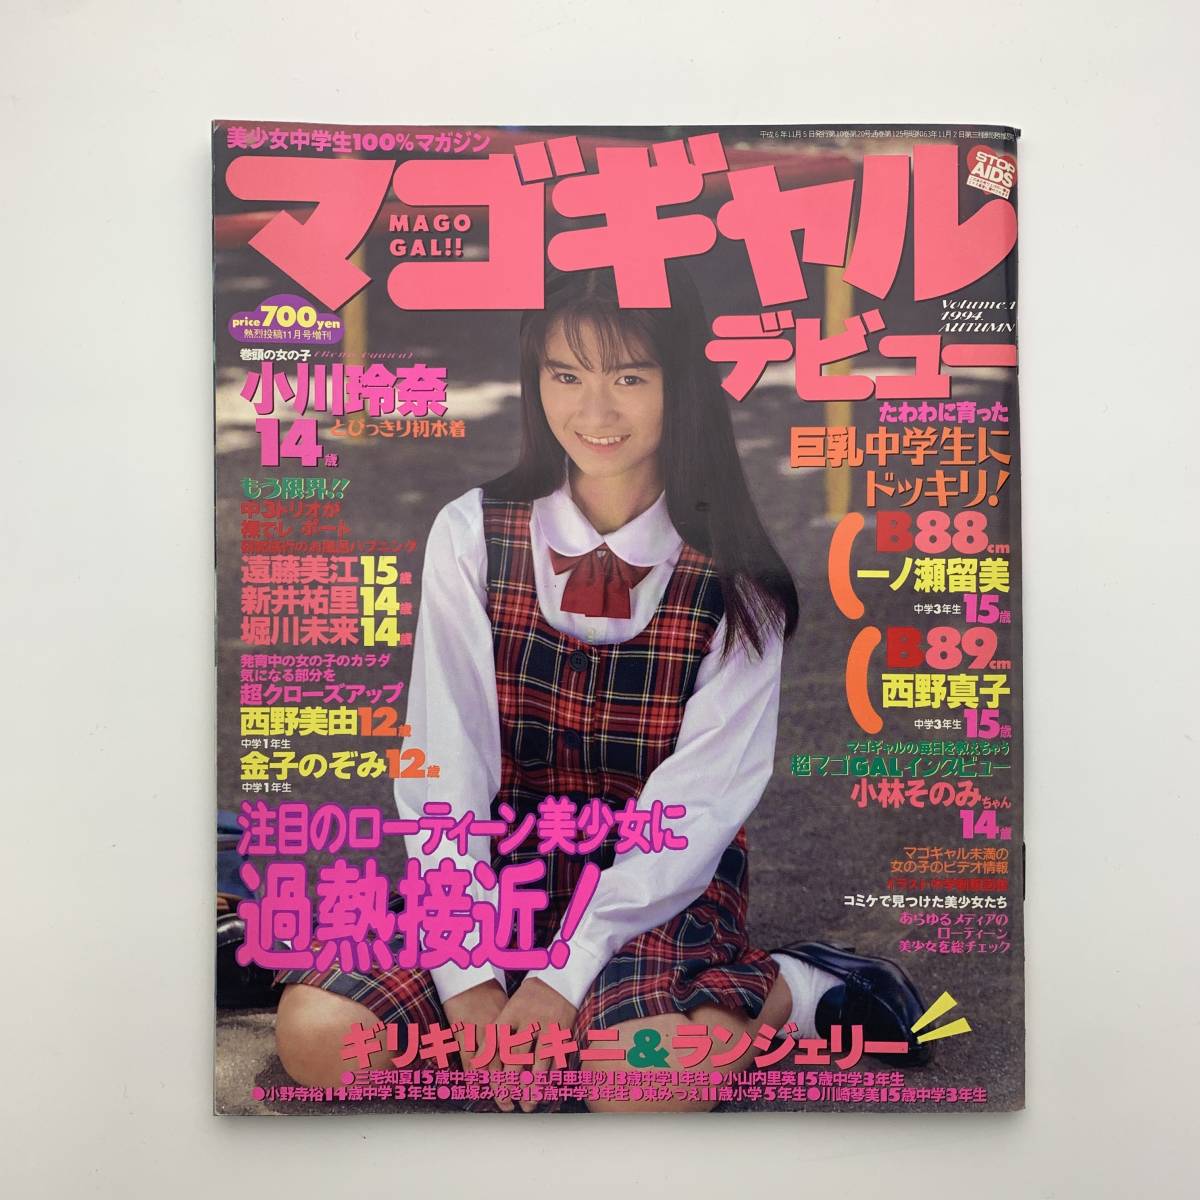 マゴギャルデビュー 熱烈投稿11月号増刊 1994年 【匿名配送】 senexpo